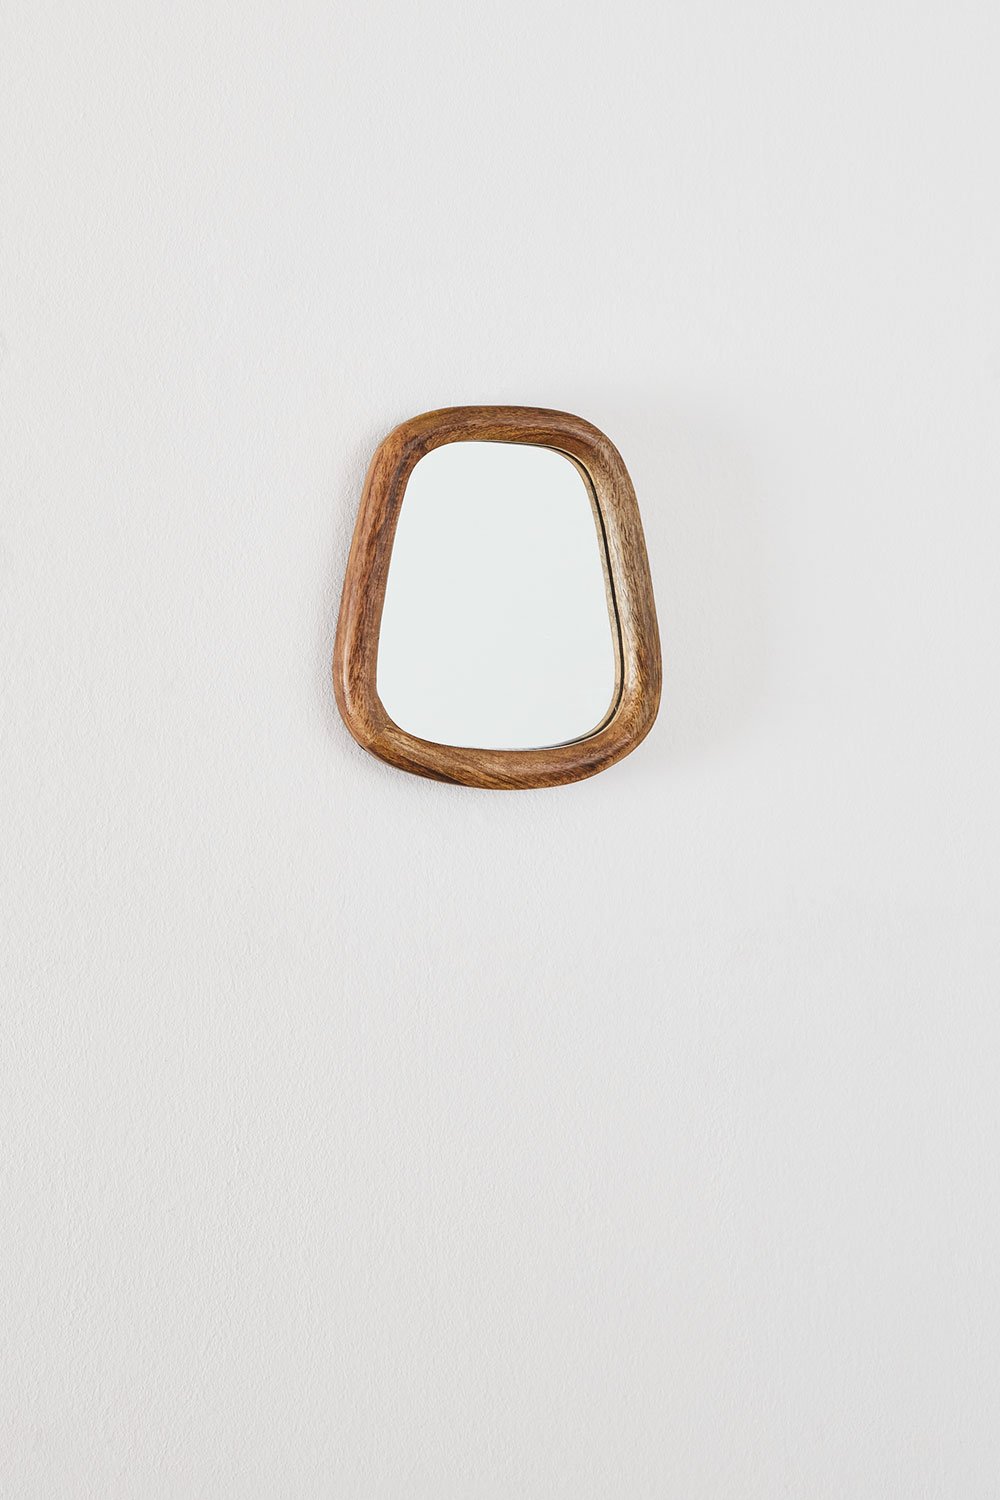 Specchio da parete rettangolare in legno di mango (19x22 cm) Gabael Design, immagine della galleria 2